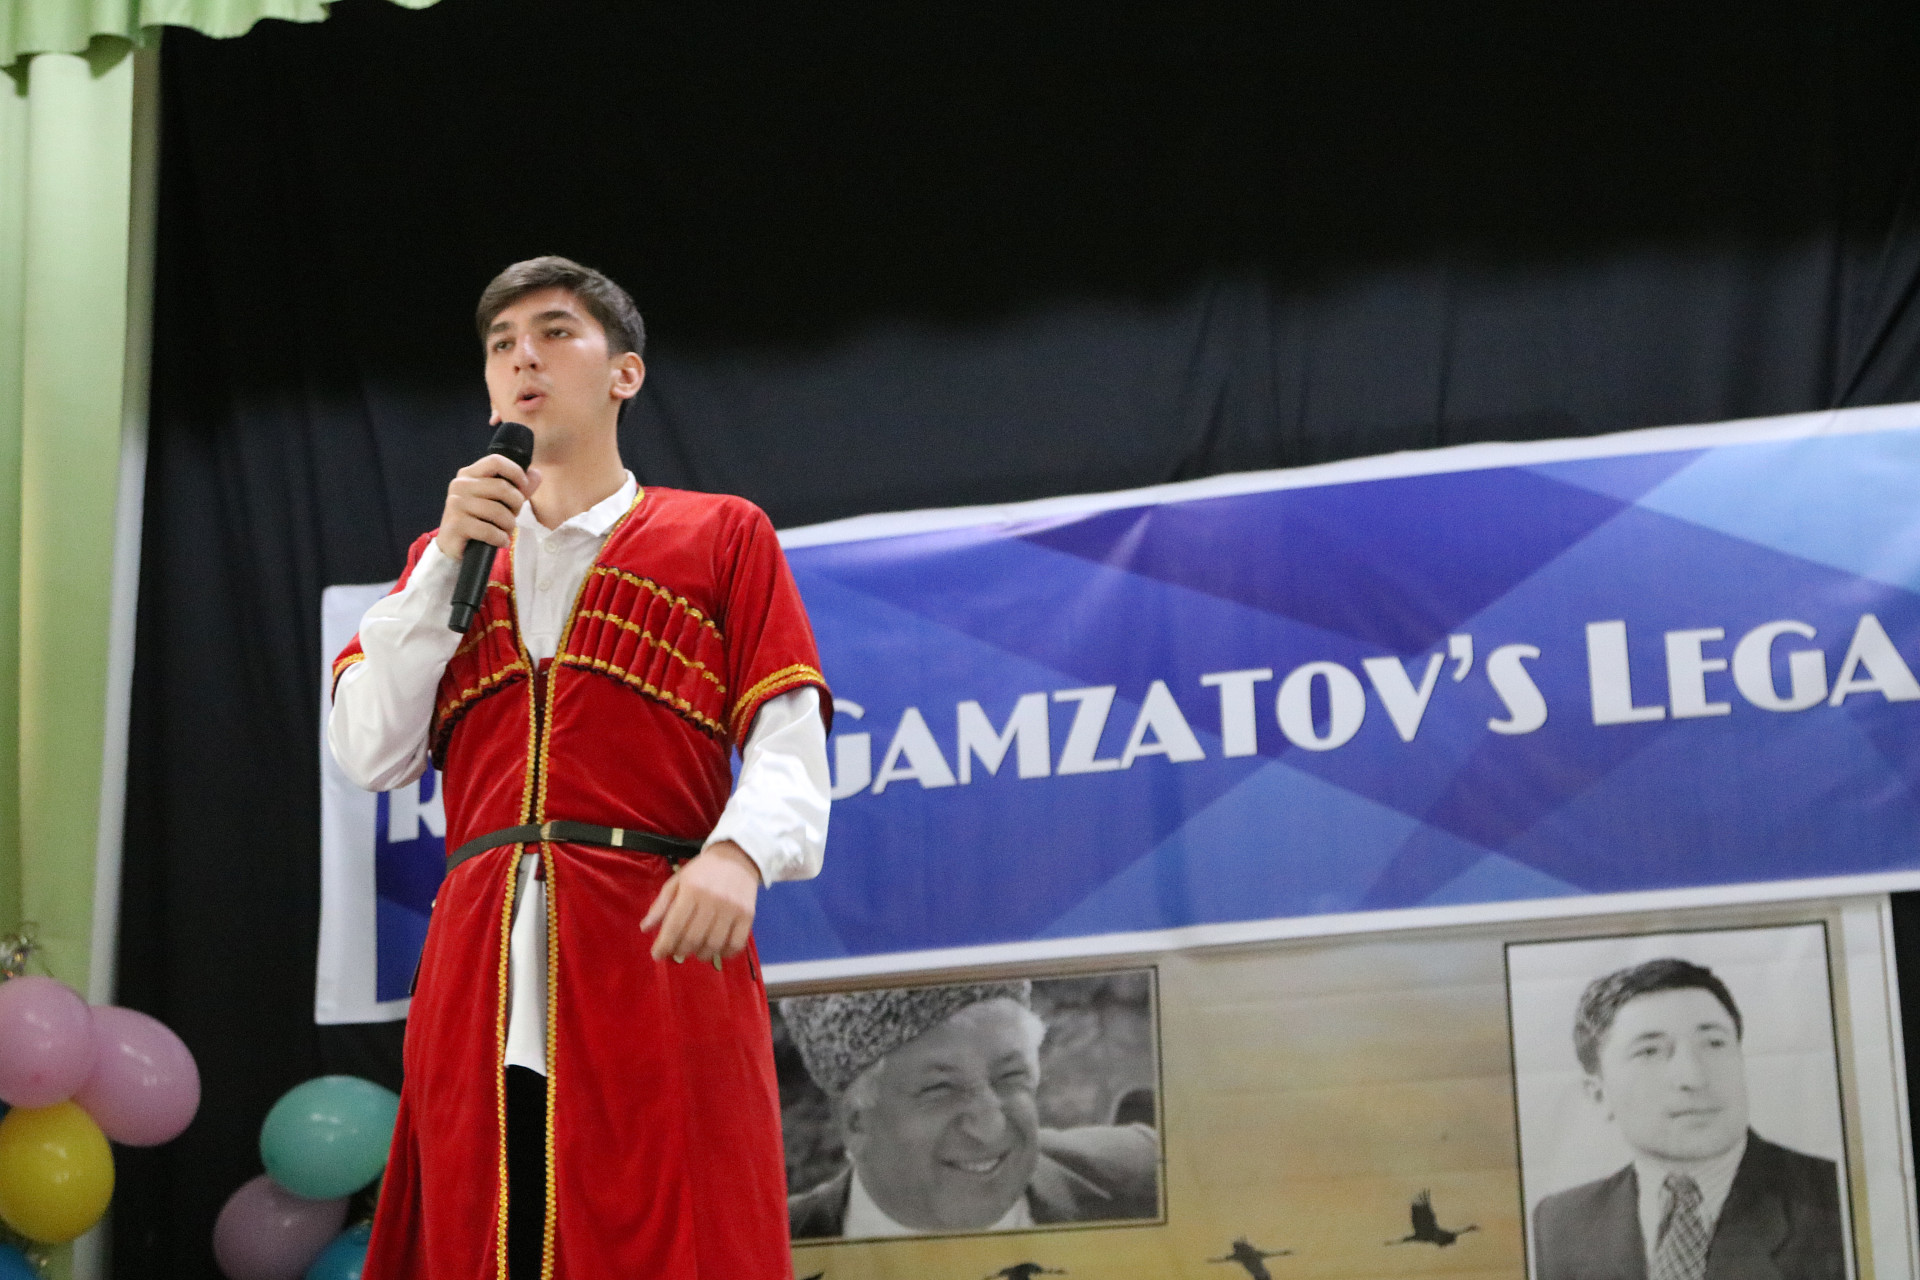 Фестиваль «Rasul Gamsatov’s Legacy/Творческое наследие Расула Гамзатова» прошел в ДГУ 